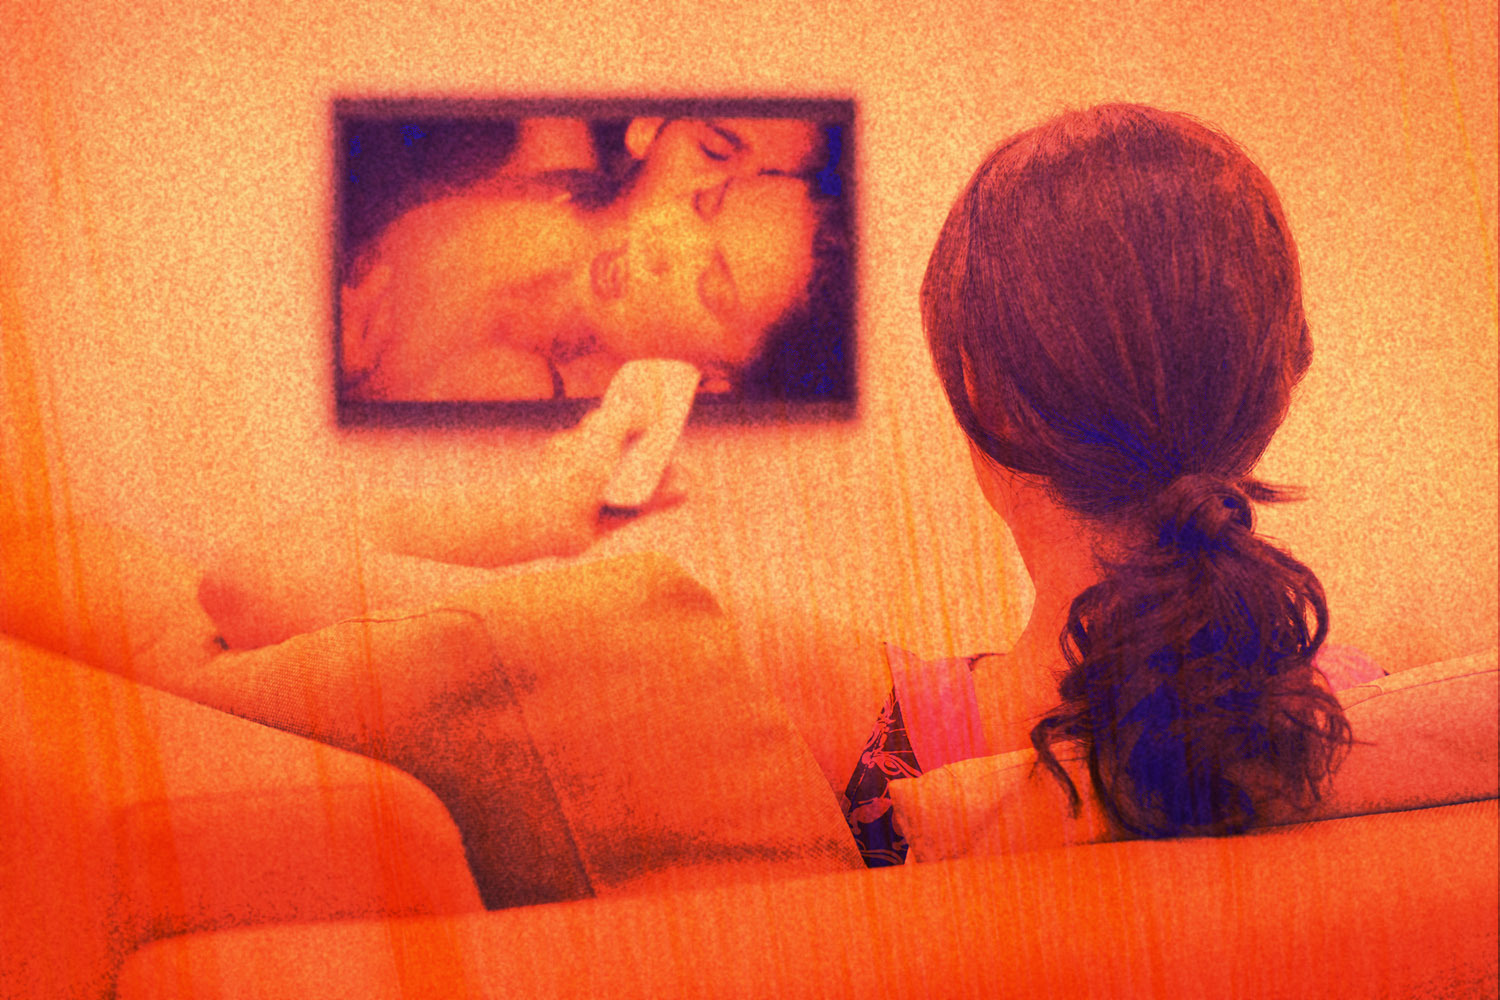 Women Watching - The Pandemic Changed How Women Watch Porn - InsideHook